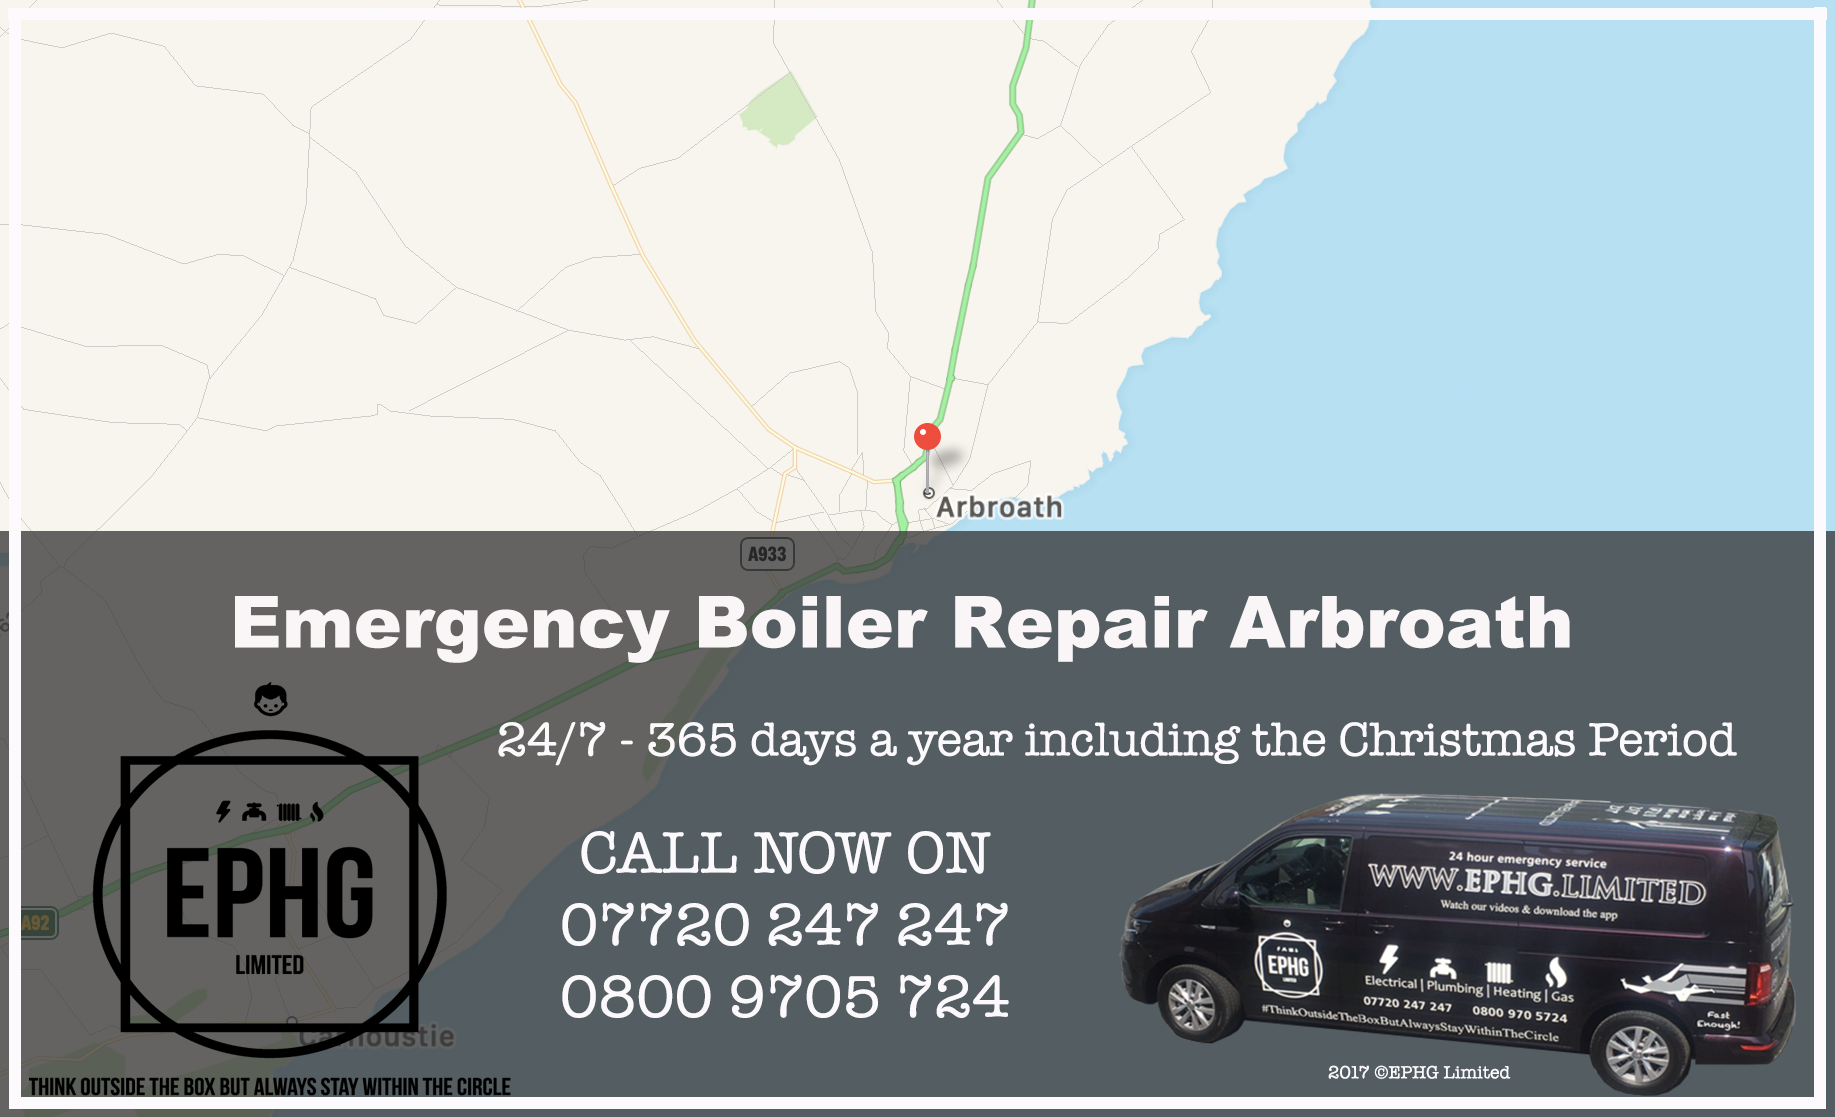 24 Hour Emergency Boiler Repair Arbroath